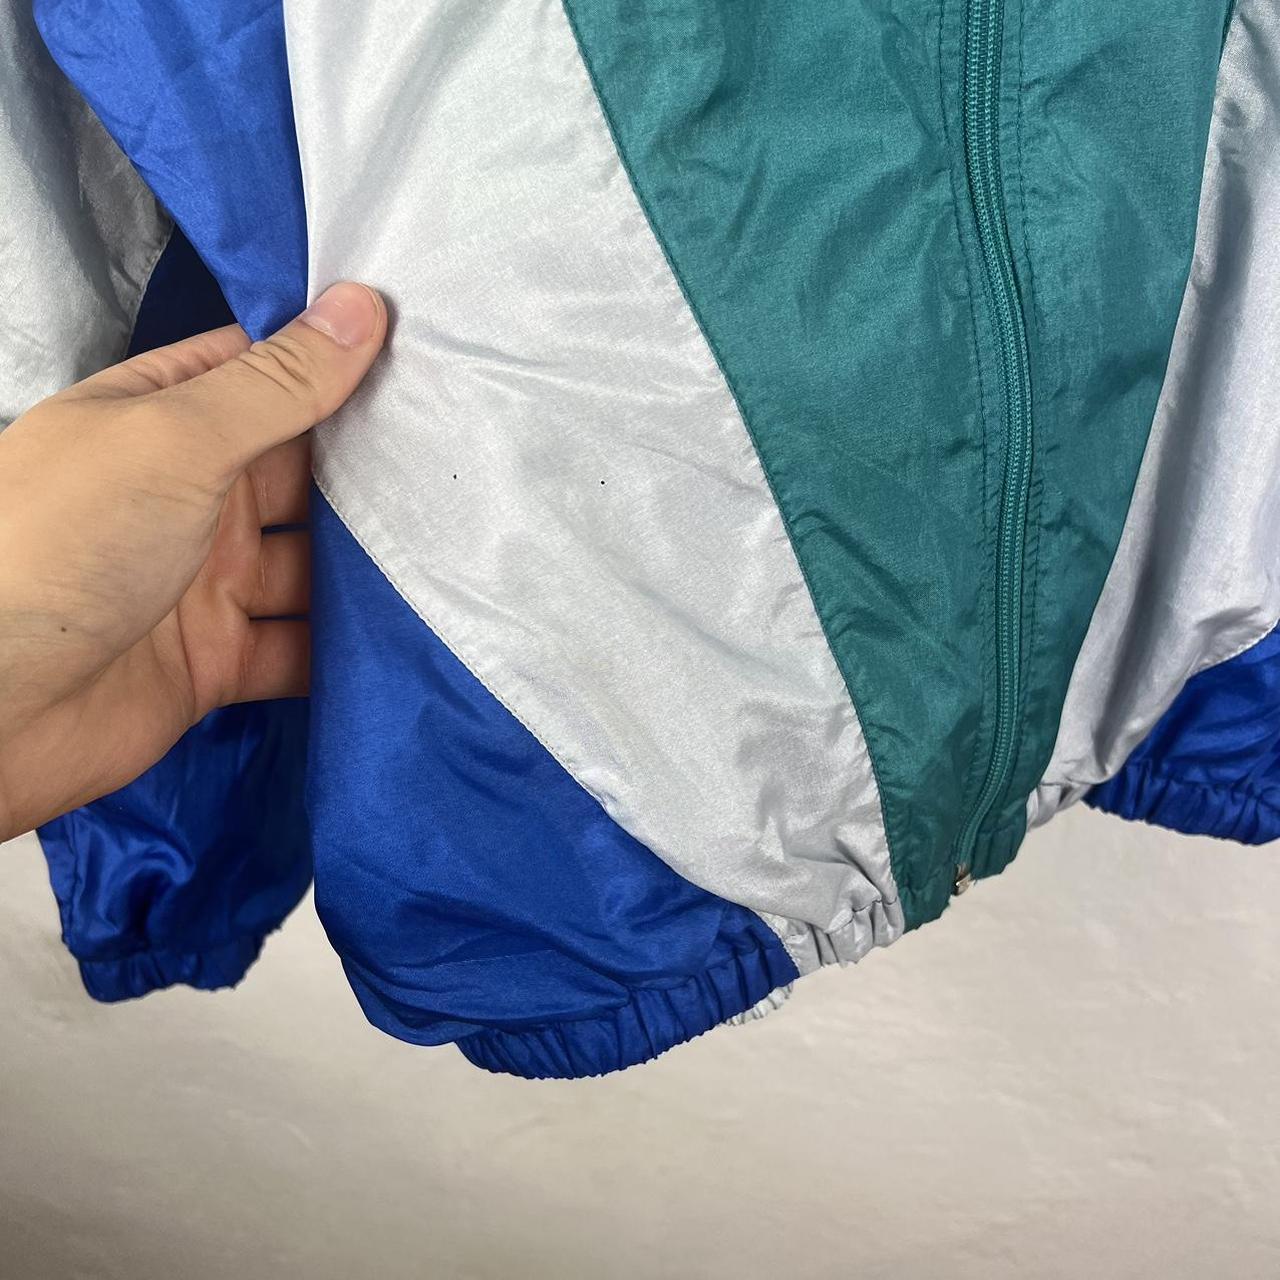 Adidas track jacket large